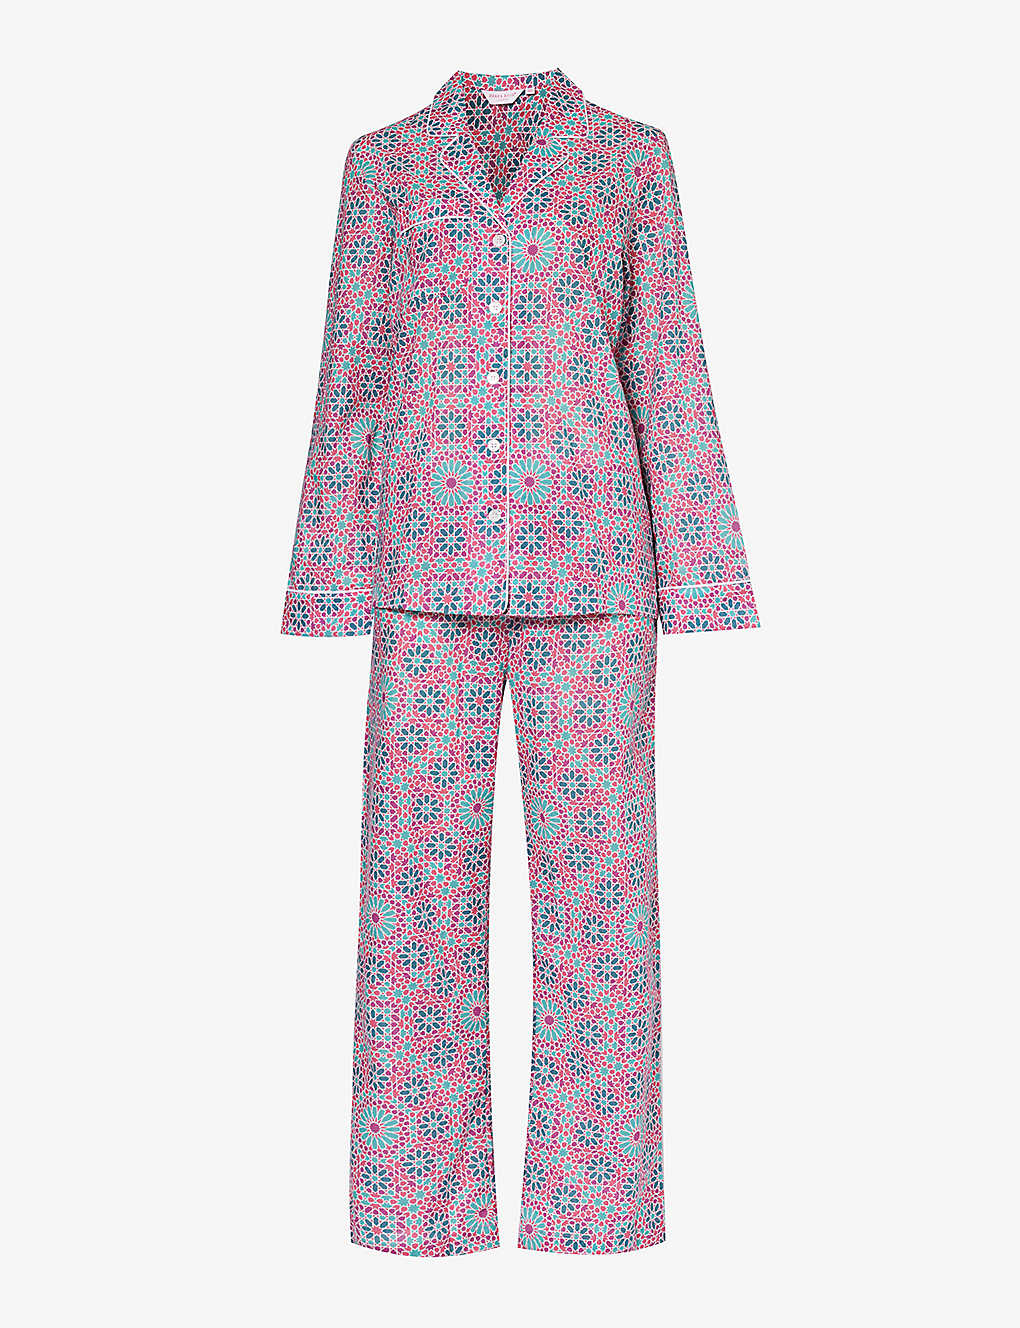 Derek Rose Ledbury Patterned Cotton Pyjama In Pink